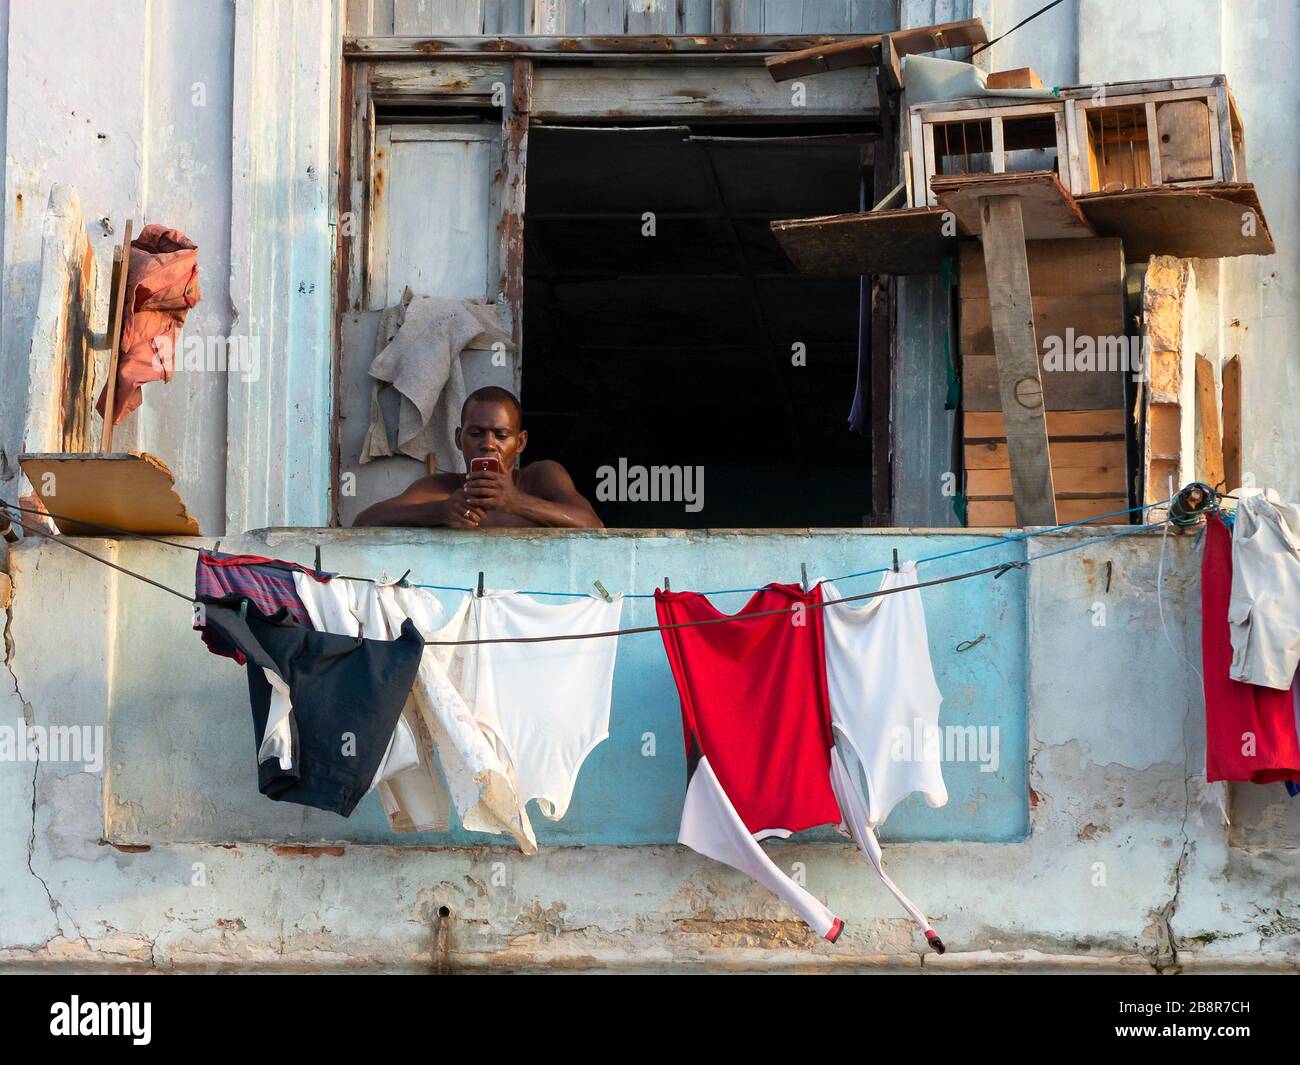 Kubanische Männer auf seinem Balkon, die das Handy zur Kommunikation nutzen. Trotz der schlechten Lebensbedingungen wird das Internet in Havanna, Kuba, beliebter. Stockfoto